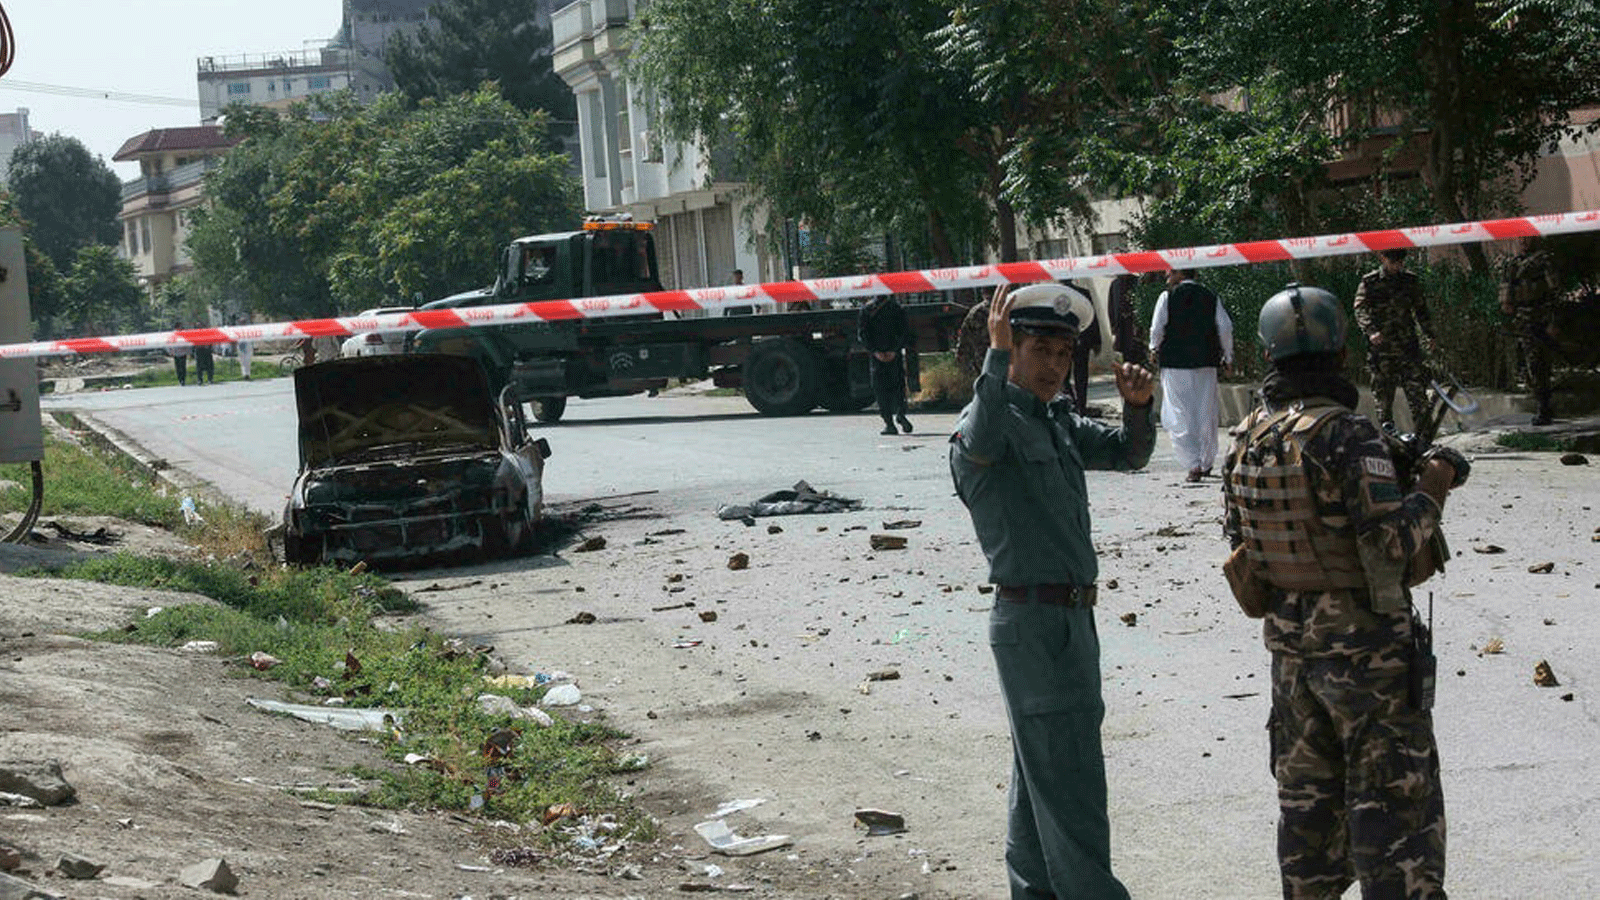 رجال أمن أفغان خلال نوبة حراسة بالقرب من مركبة متفحمة أطلقت منها صواريخ سقطت بالقرب من القصر الرئاسي الأفغاني في 20 تموز/يوليو 2021